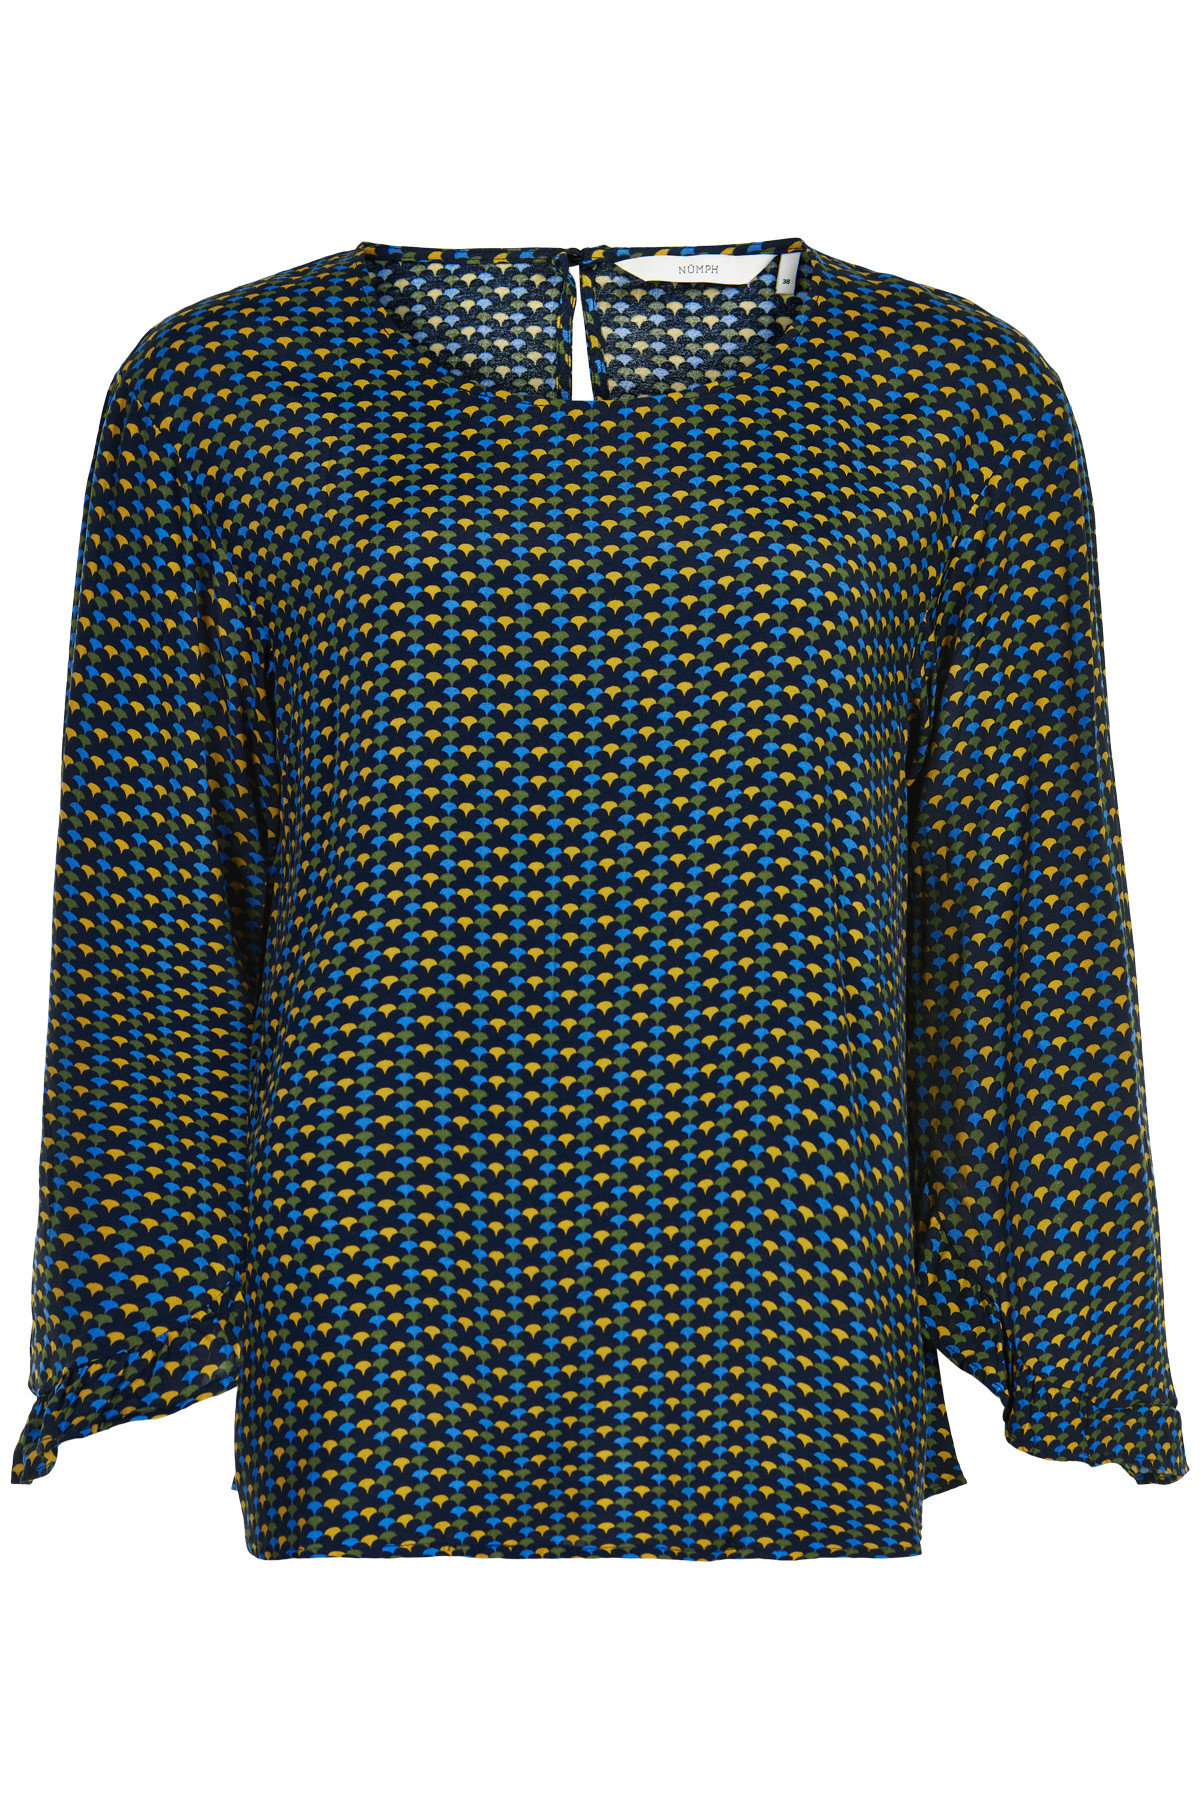 Nümph Nuailish Skjorte, Farve: Blå, Størrelse: 36, Dame